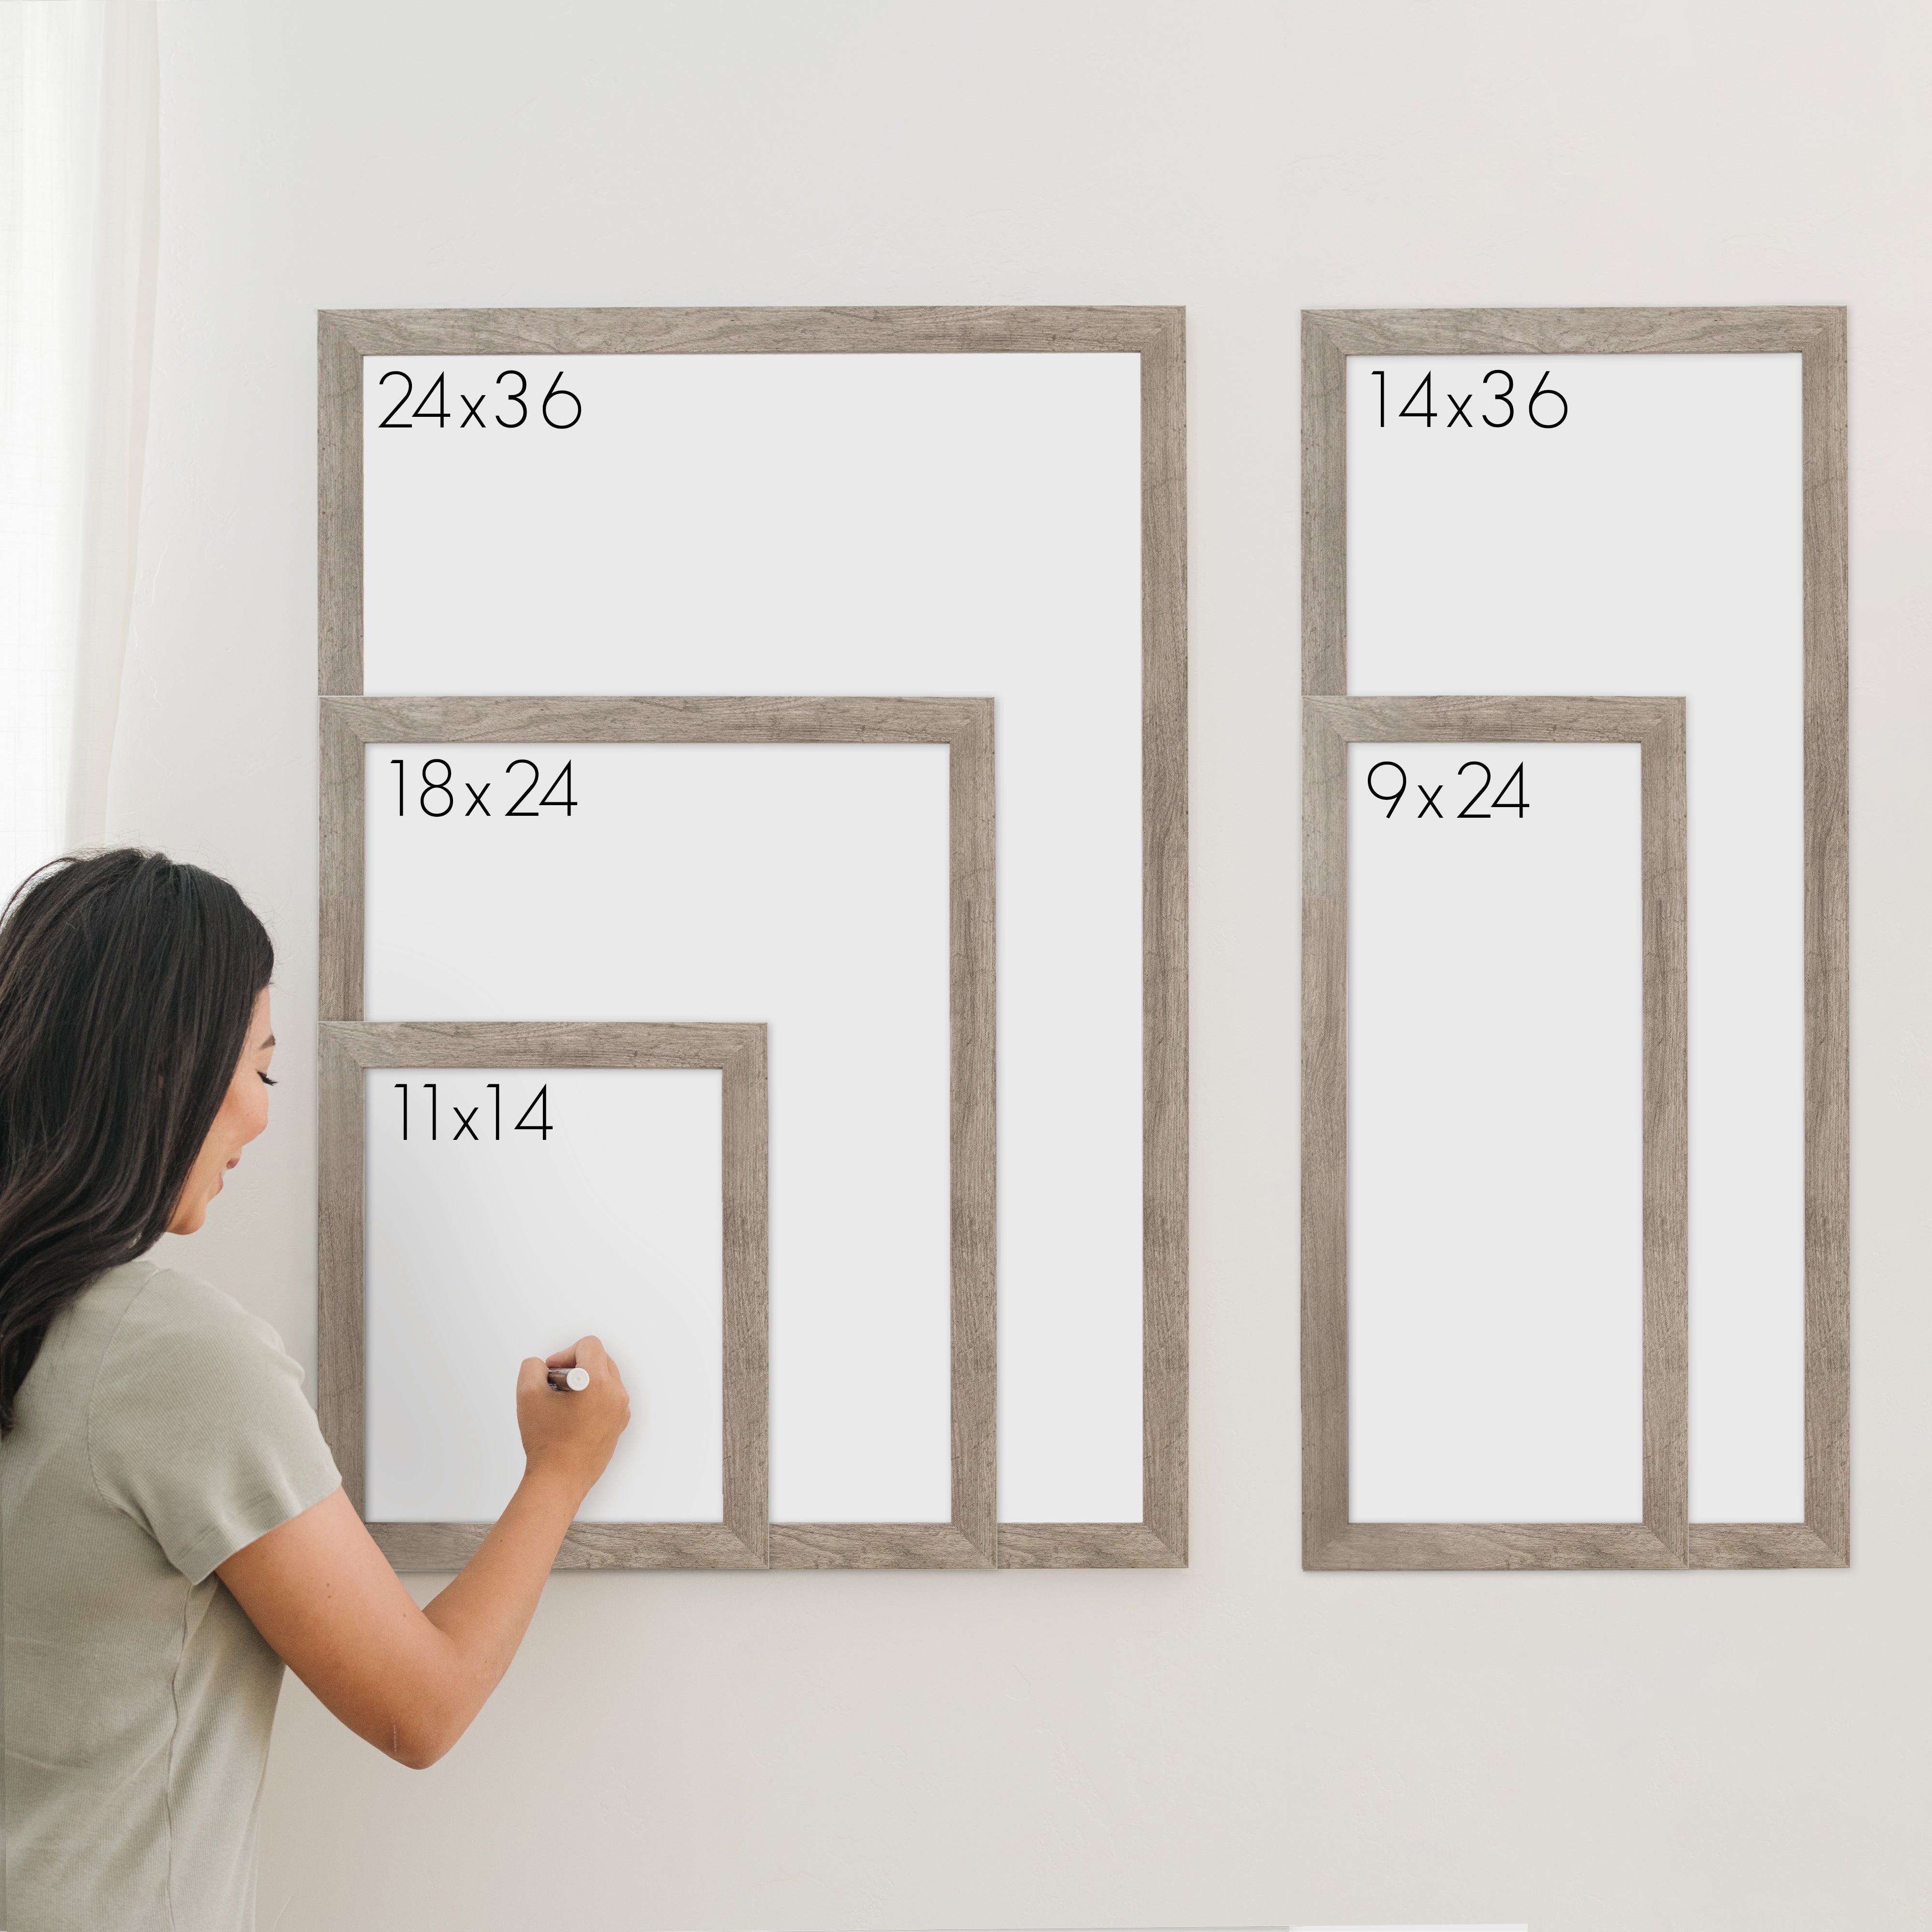 1 Person Framed Chalkboard Chore Chart  | Vertical Pennington